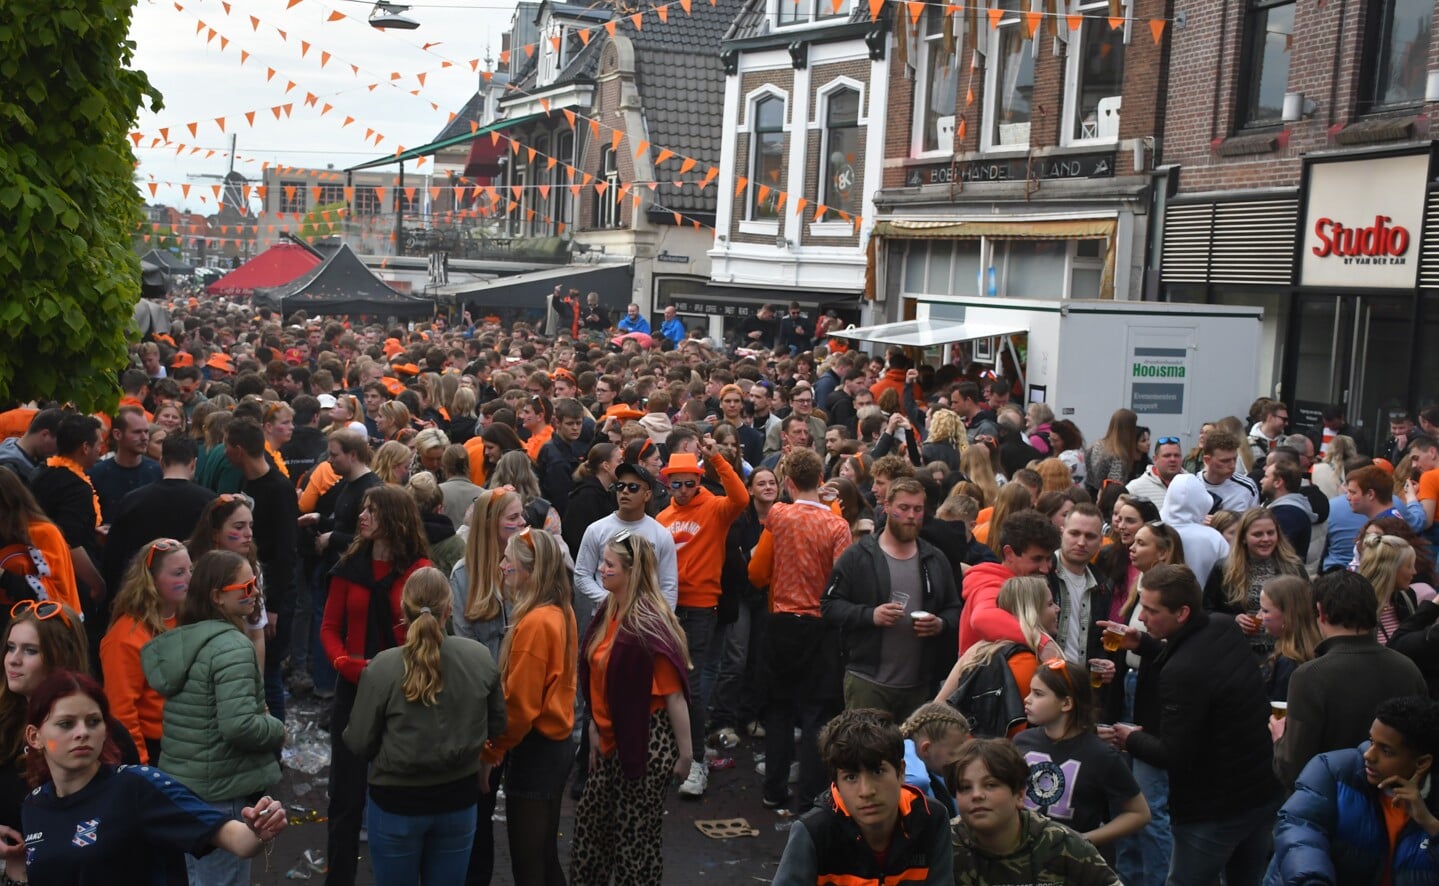 
Koningsdagfeest in uitgaanscentrum Heerenveen trekt weer veel publiek
